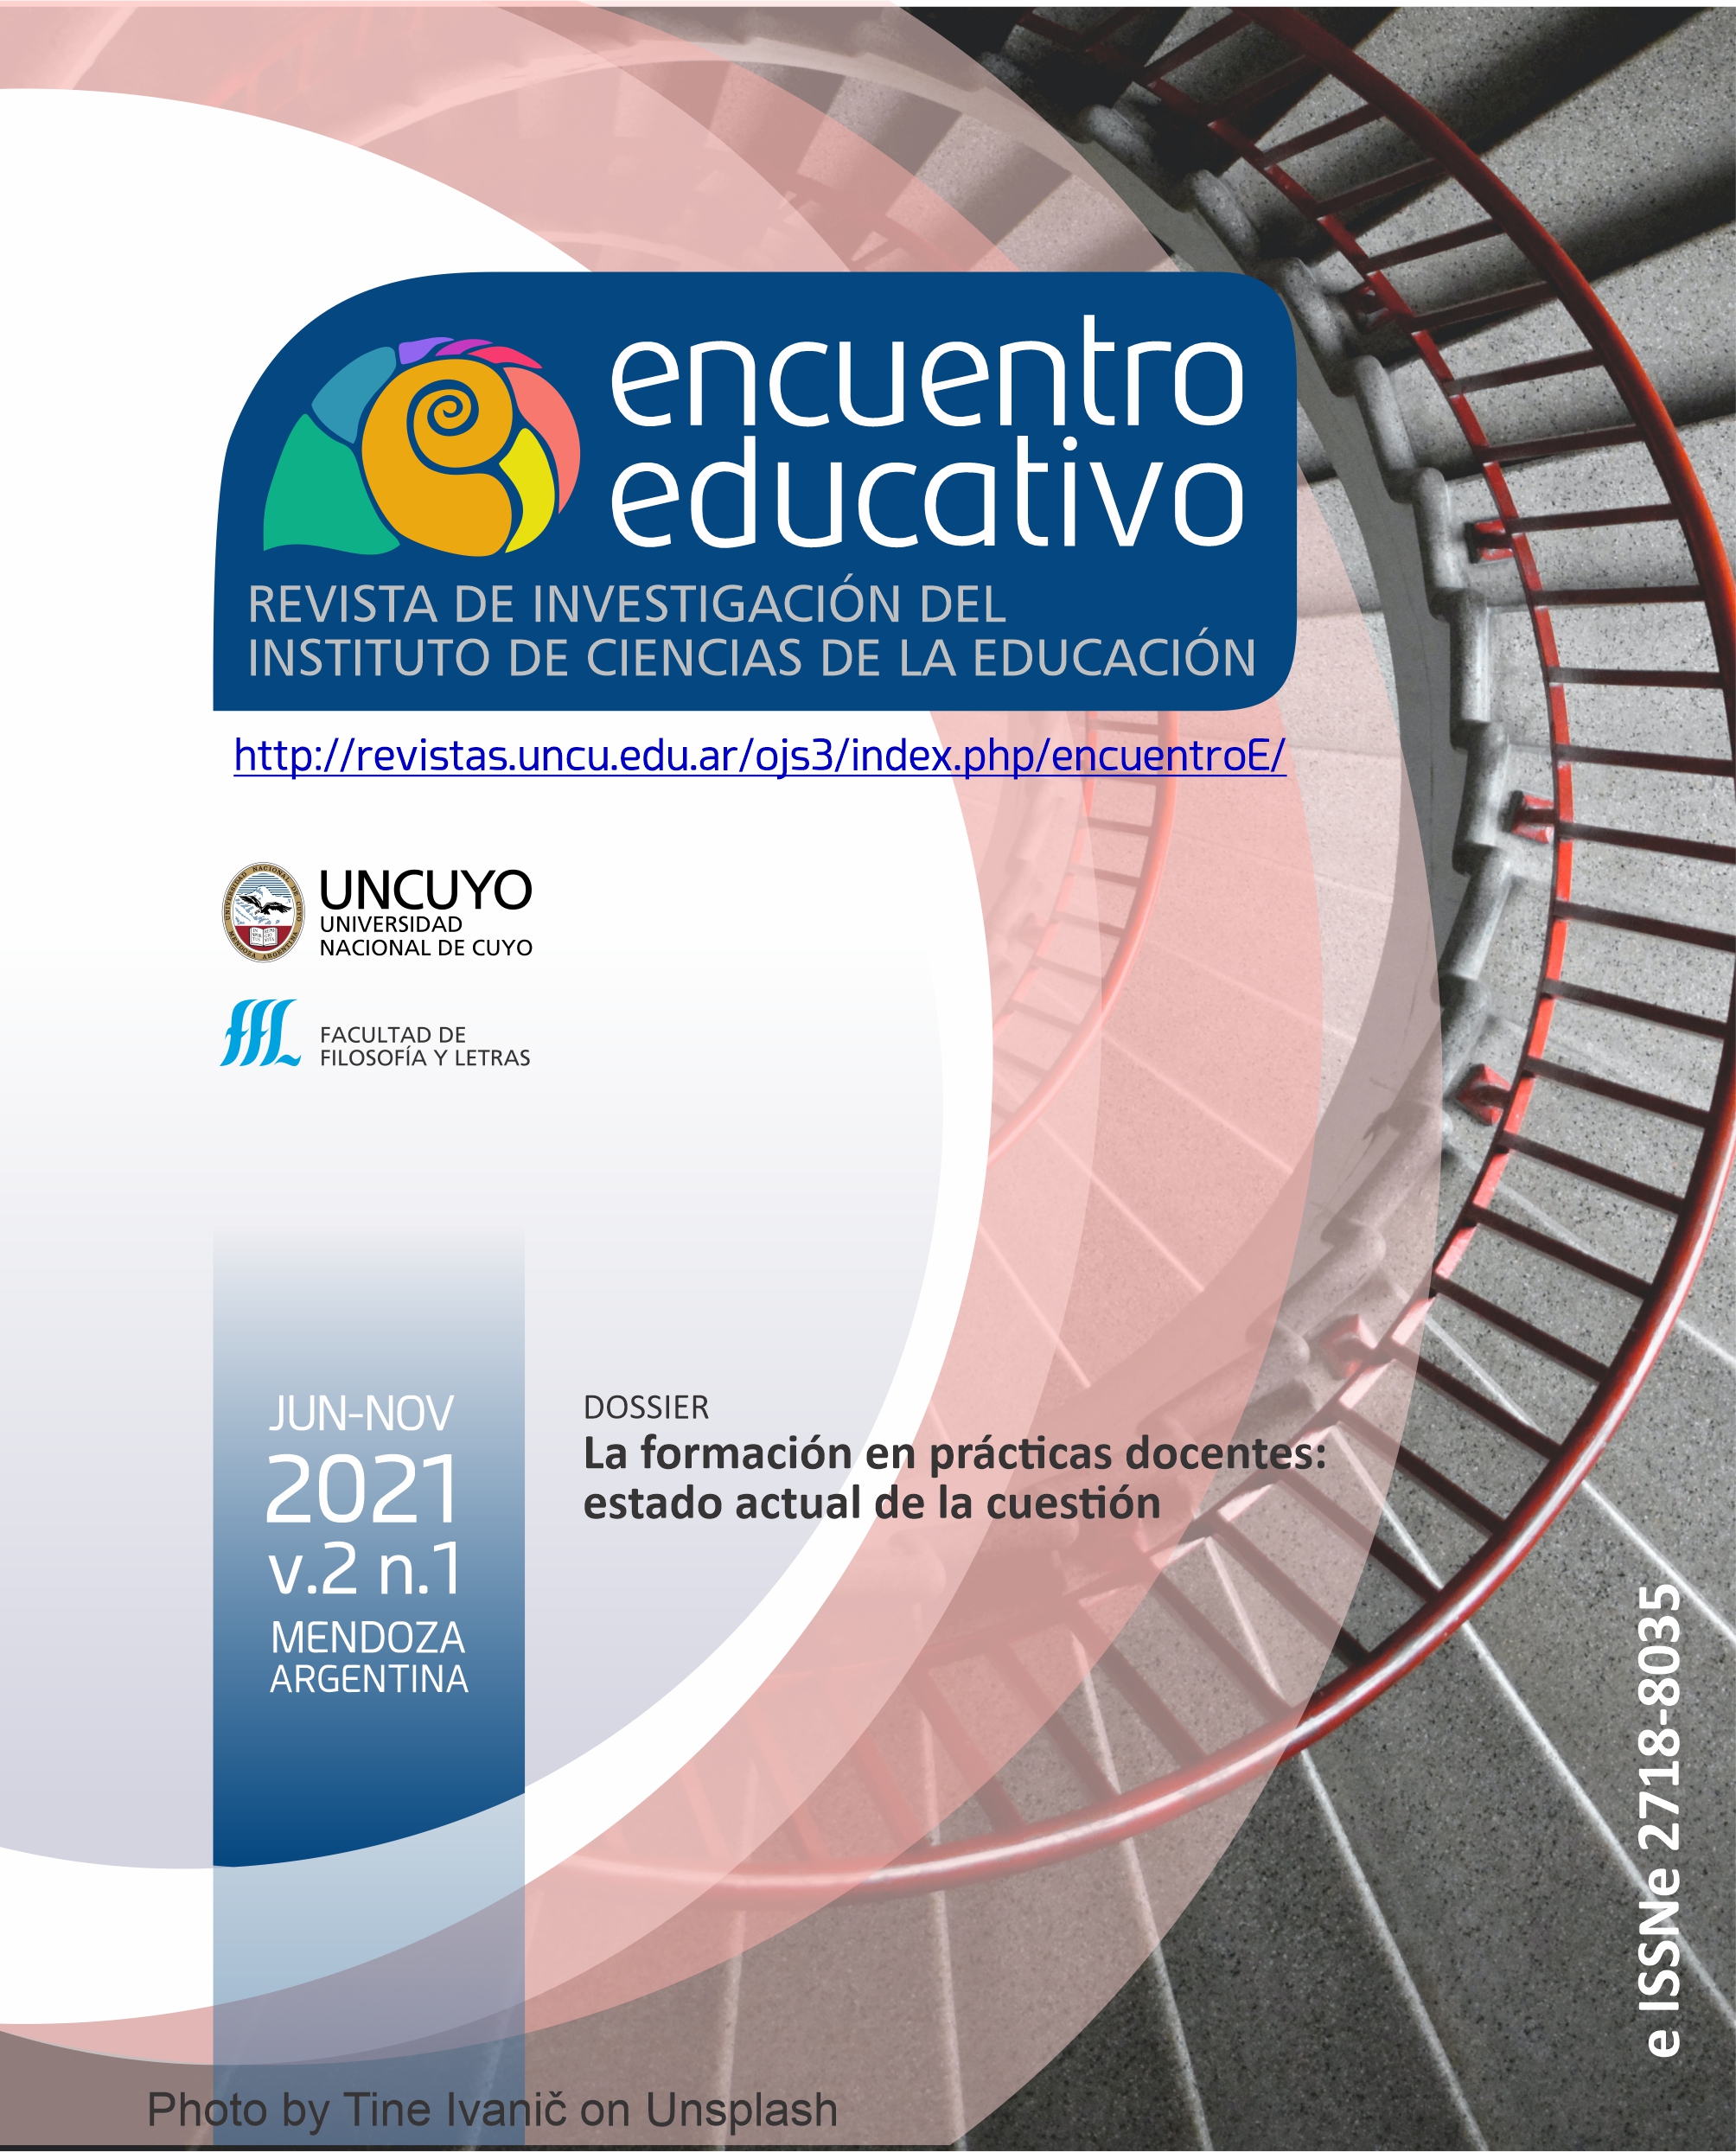 					Afficher Vol. 2 No 1 (2021): DOSSIER La formación en prácticas docentes: estado actual de la cuestión
				